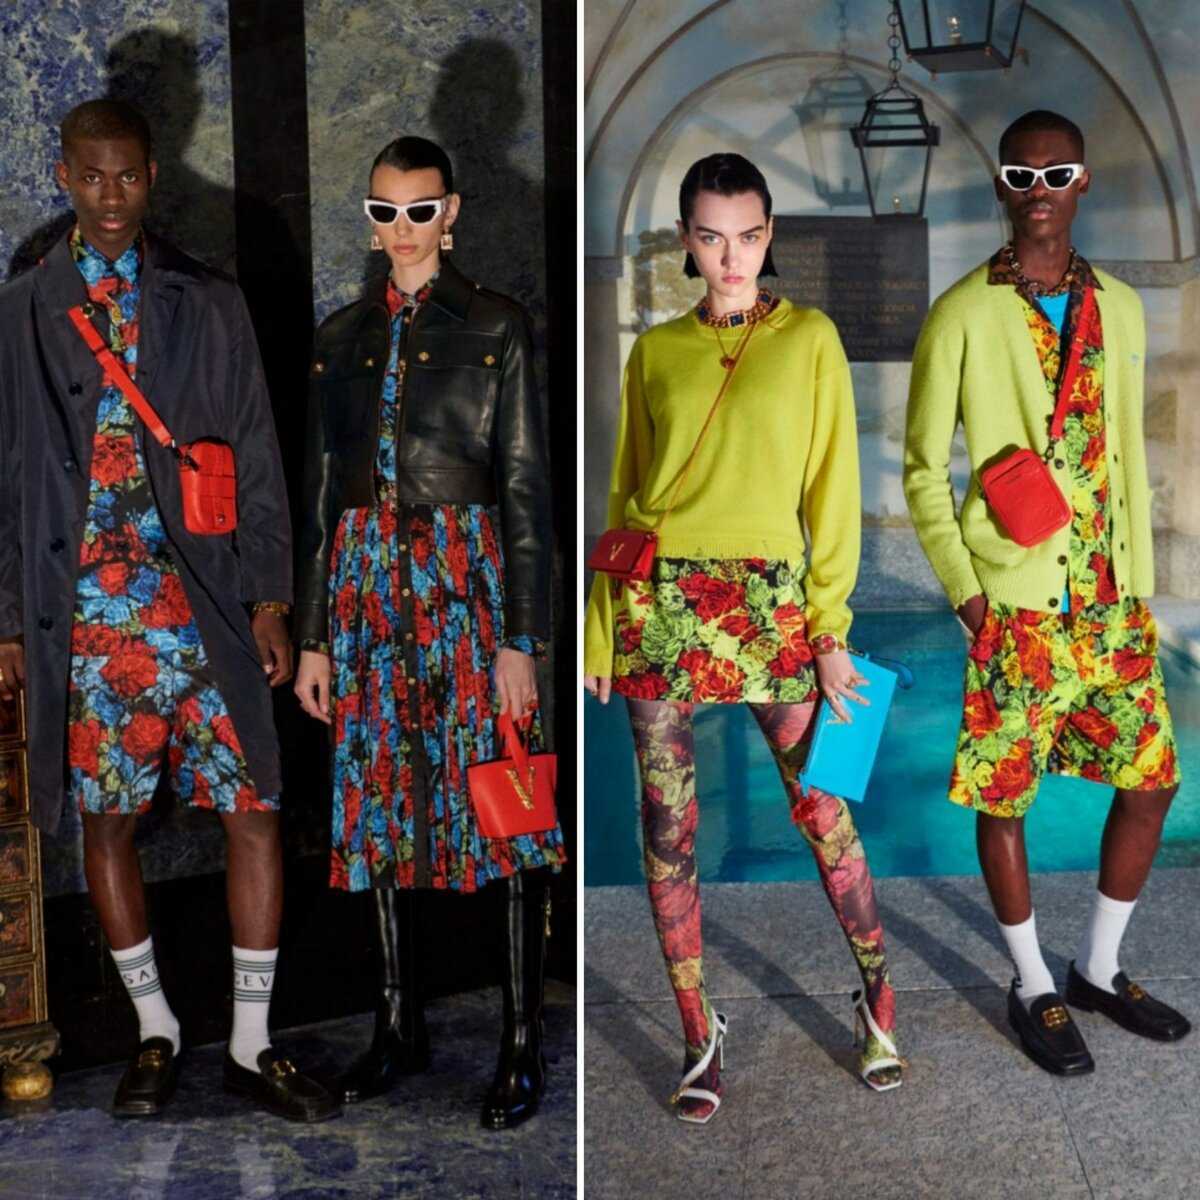 Неделя моды в париже 2021 года: осень, модели, гости и показы